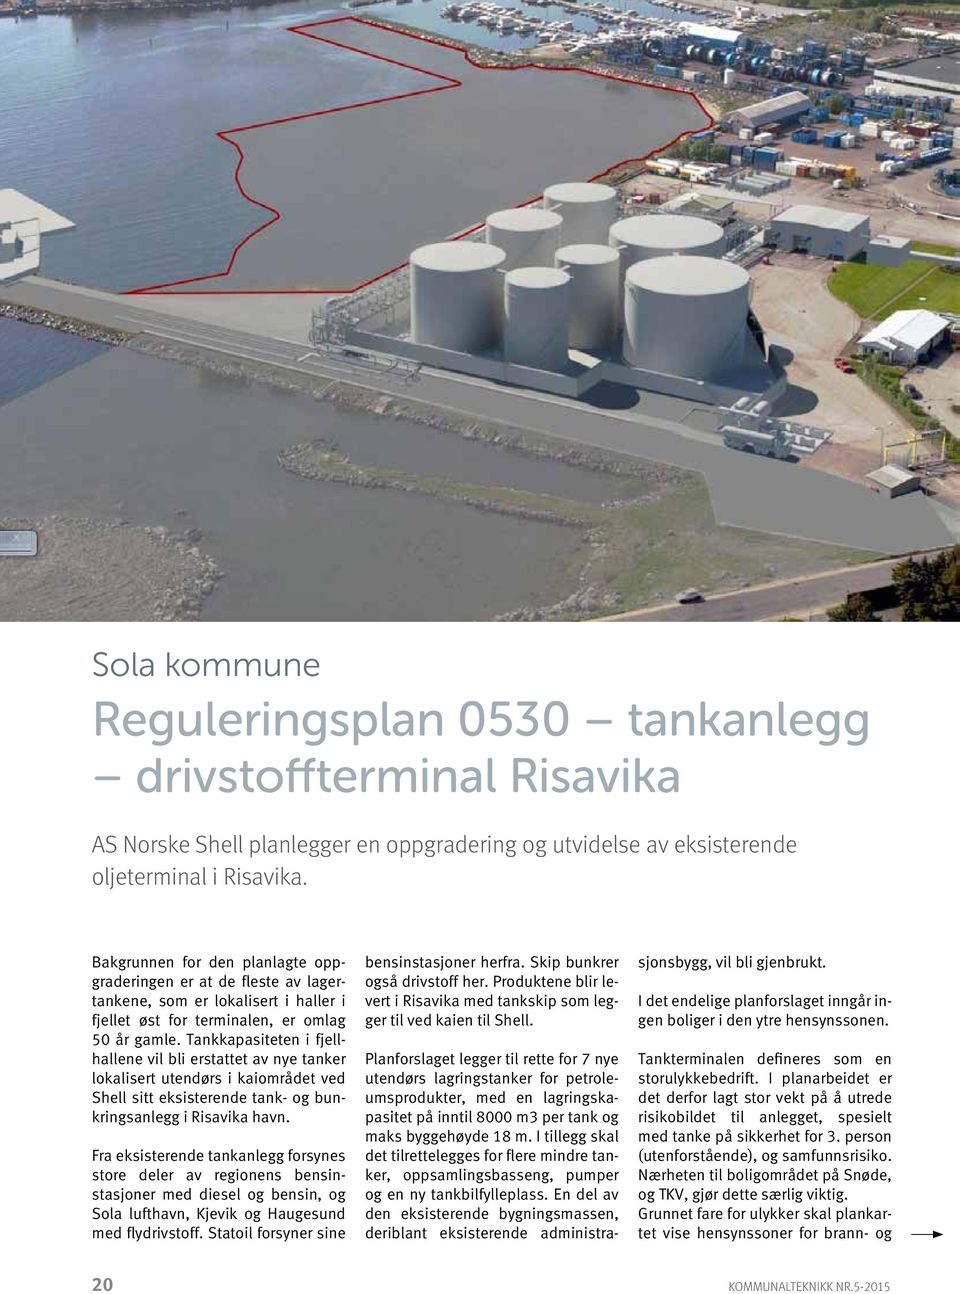 Tankkapasiteten i fjellhallene vil bli erstattet av nye tanker lokalisert utendørs i kaiområdet ved Shell sitt eksisterende tank- og bunkringsanlegg i Risavika havn.